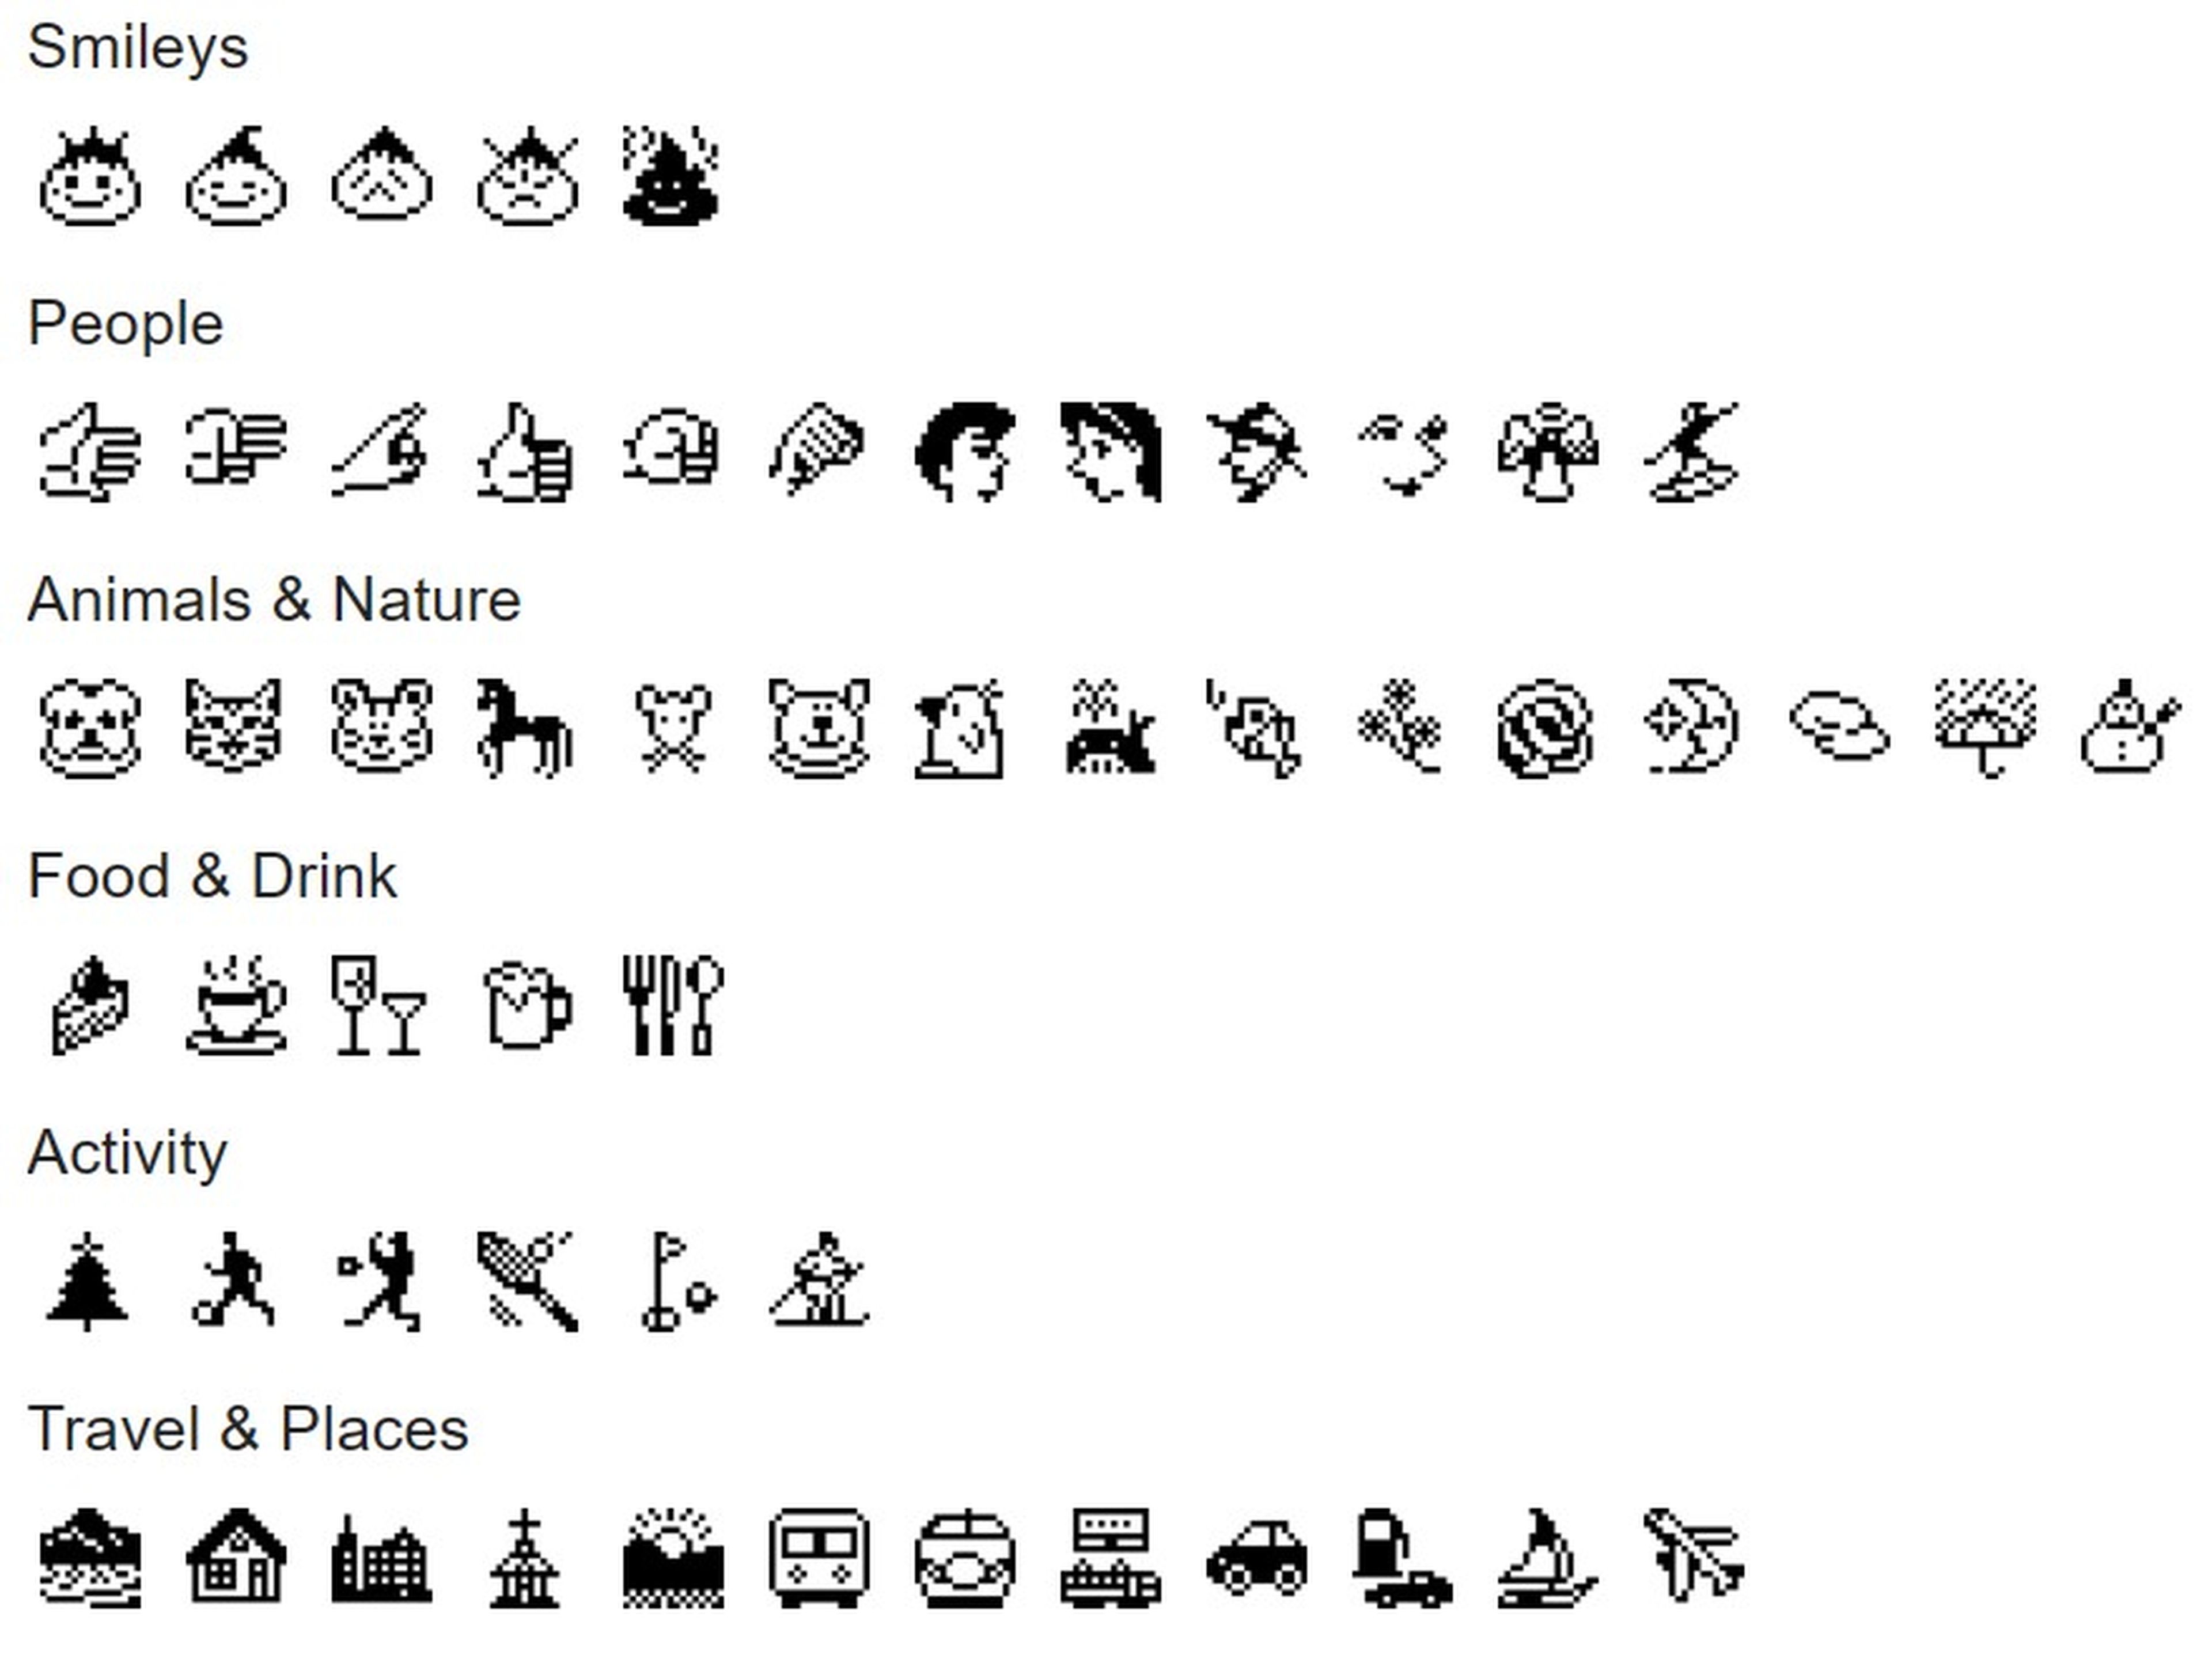 Emojis creados por Shigetaka Kurita